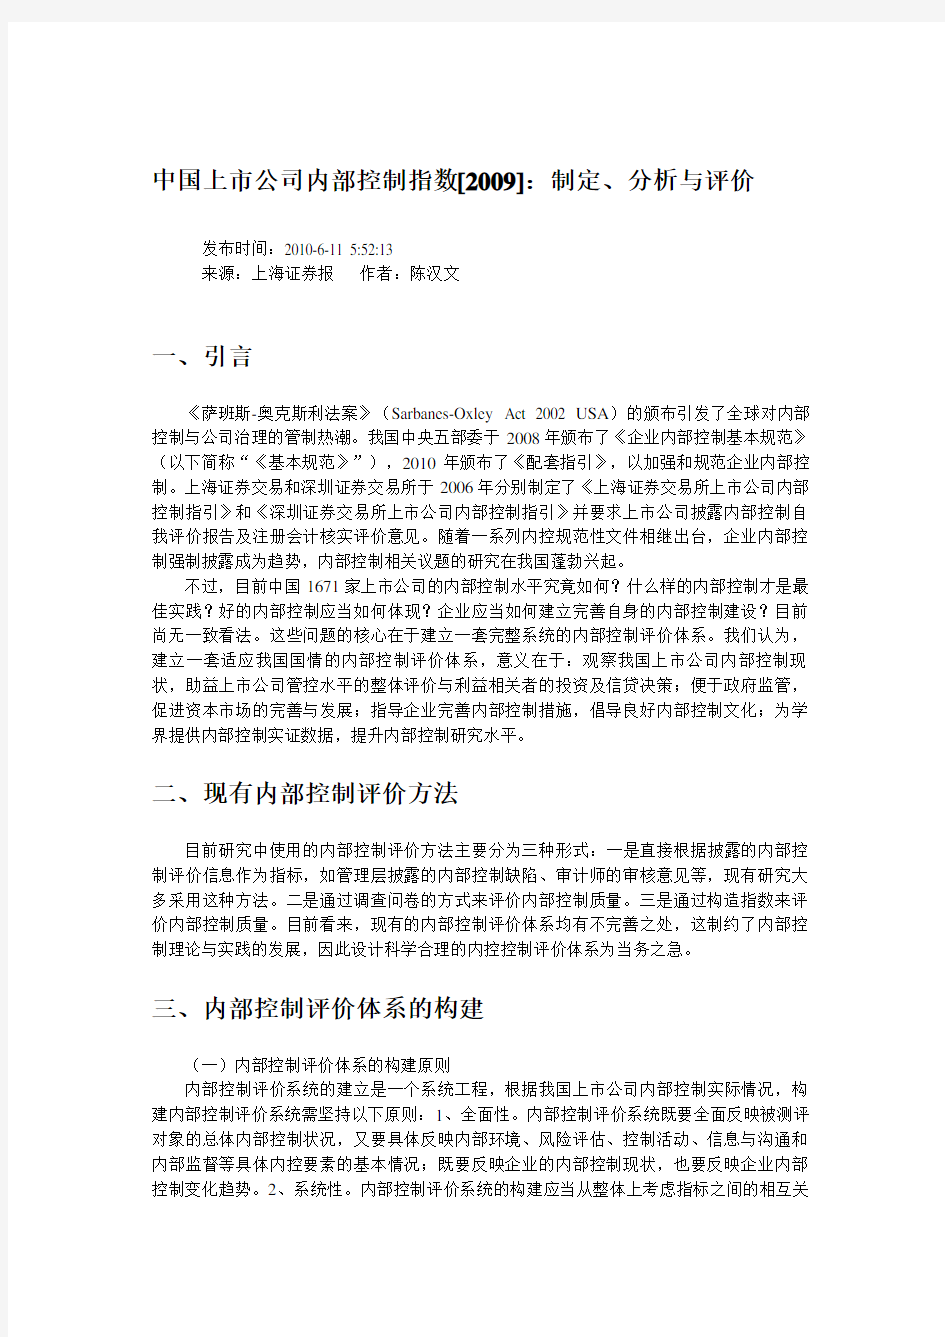 中国上市公司内部控制指数制定分析与评价(DOC 9页)